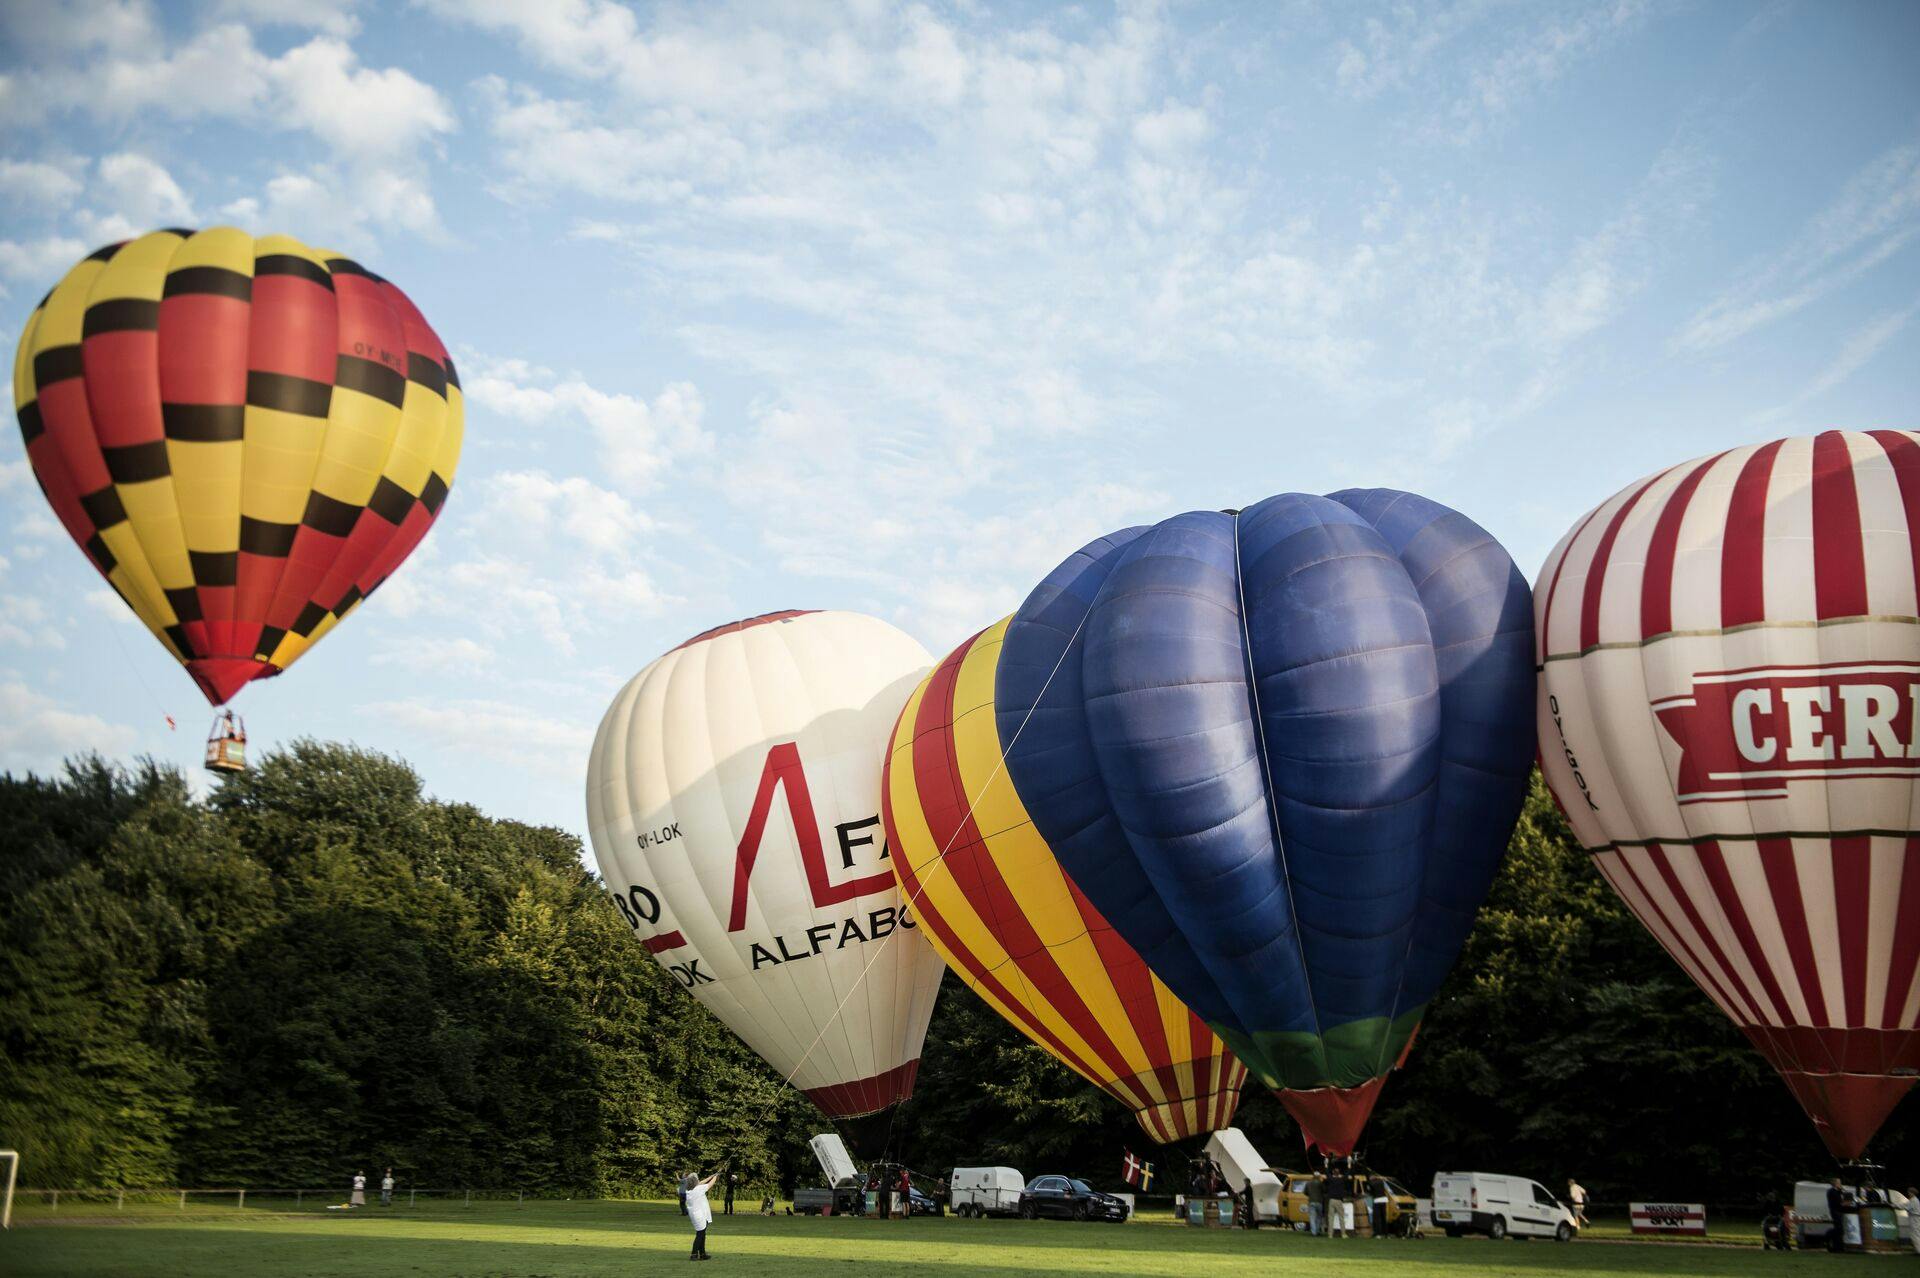 Dårligt vejr forhindrer ballonflyvning for anden dag i træk til dette års danmarksmesterskab i ballonflyvning